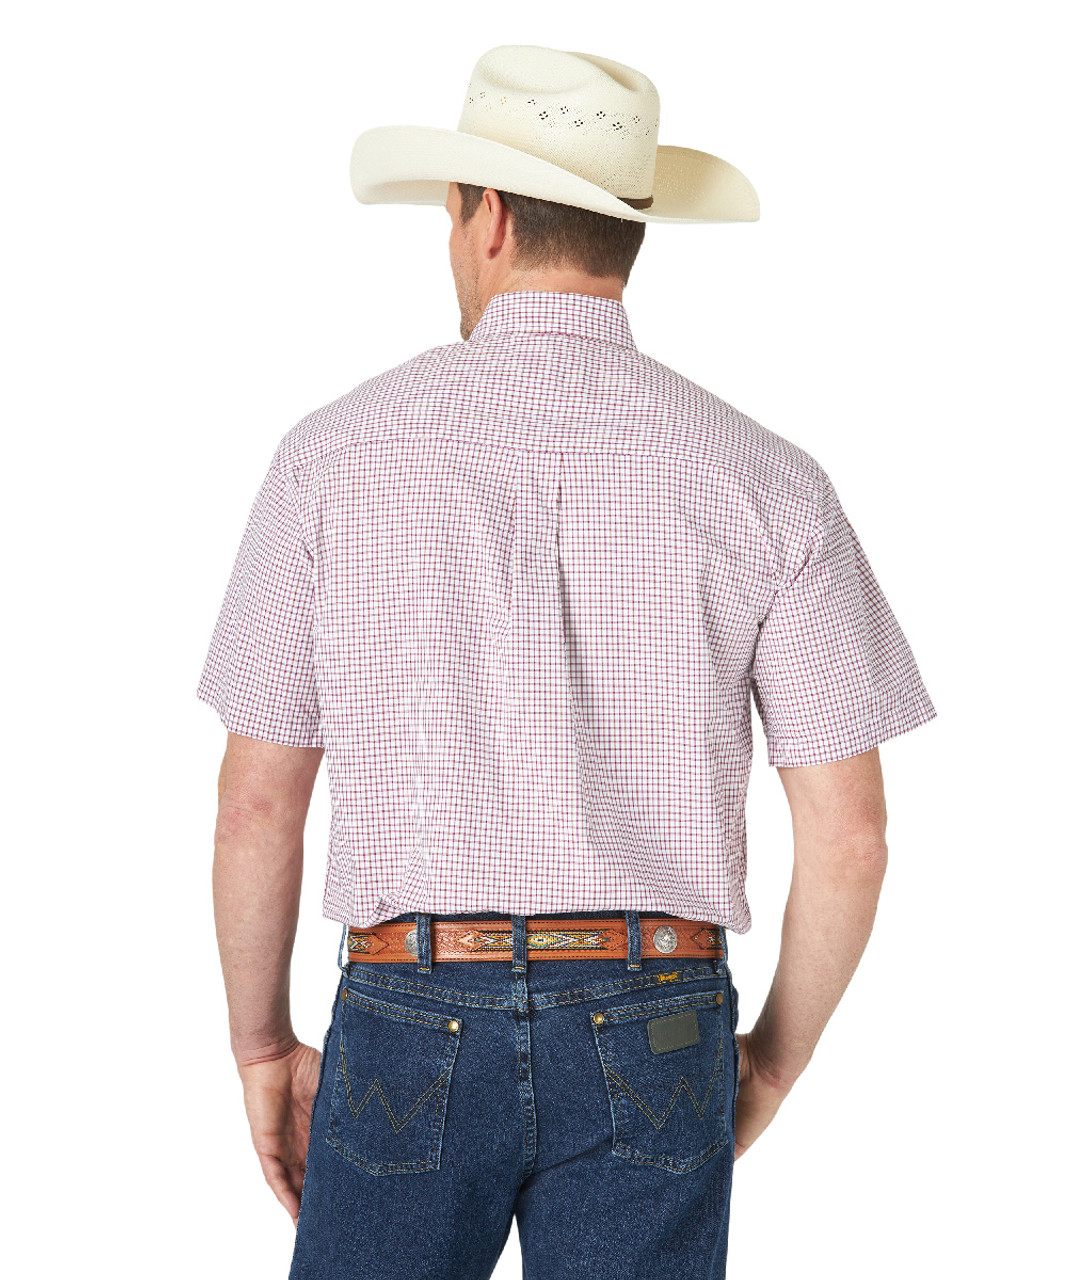 Wrangler George Strait Short Sleeve Shirt